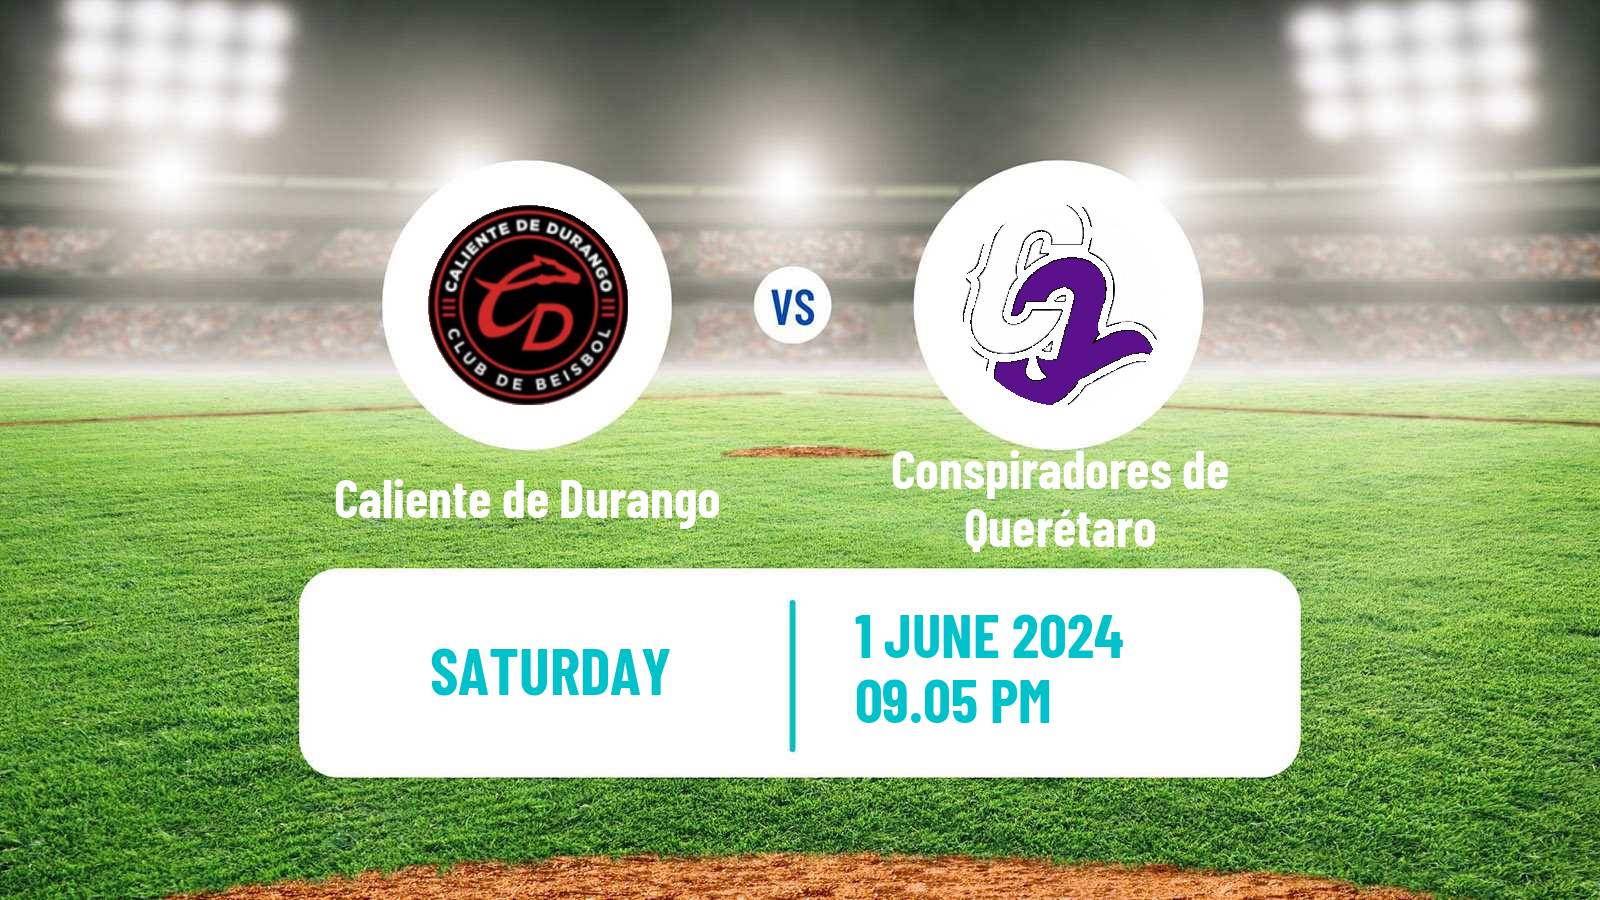 Baseball LMB Caliente de Durango - Conspiradores de Querétaro